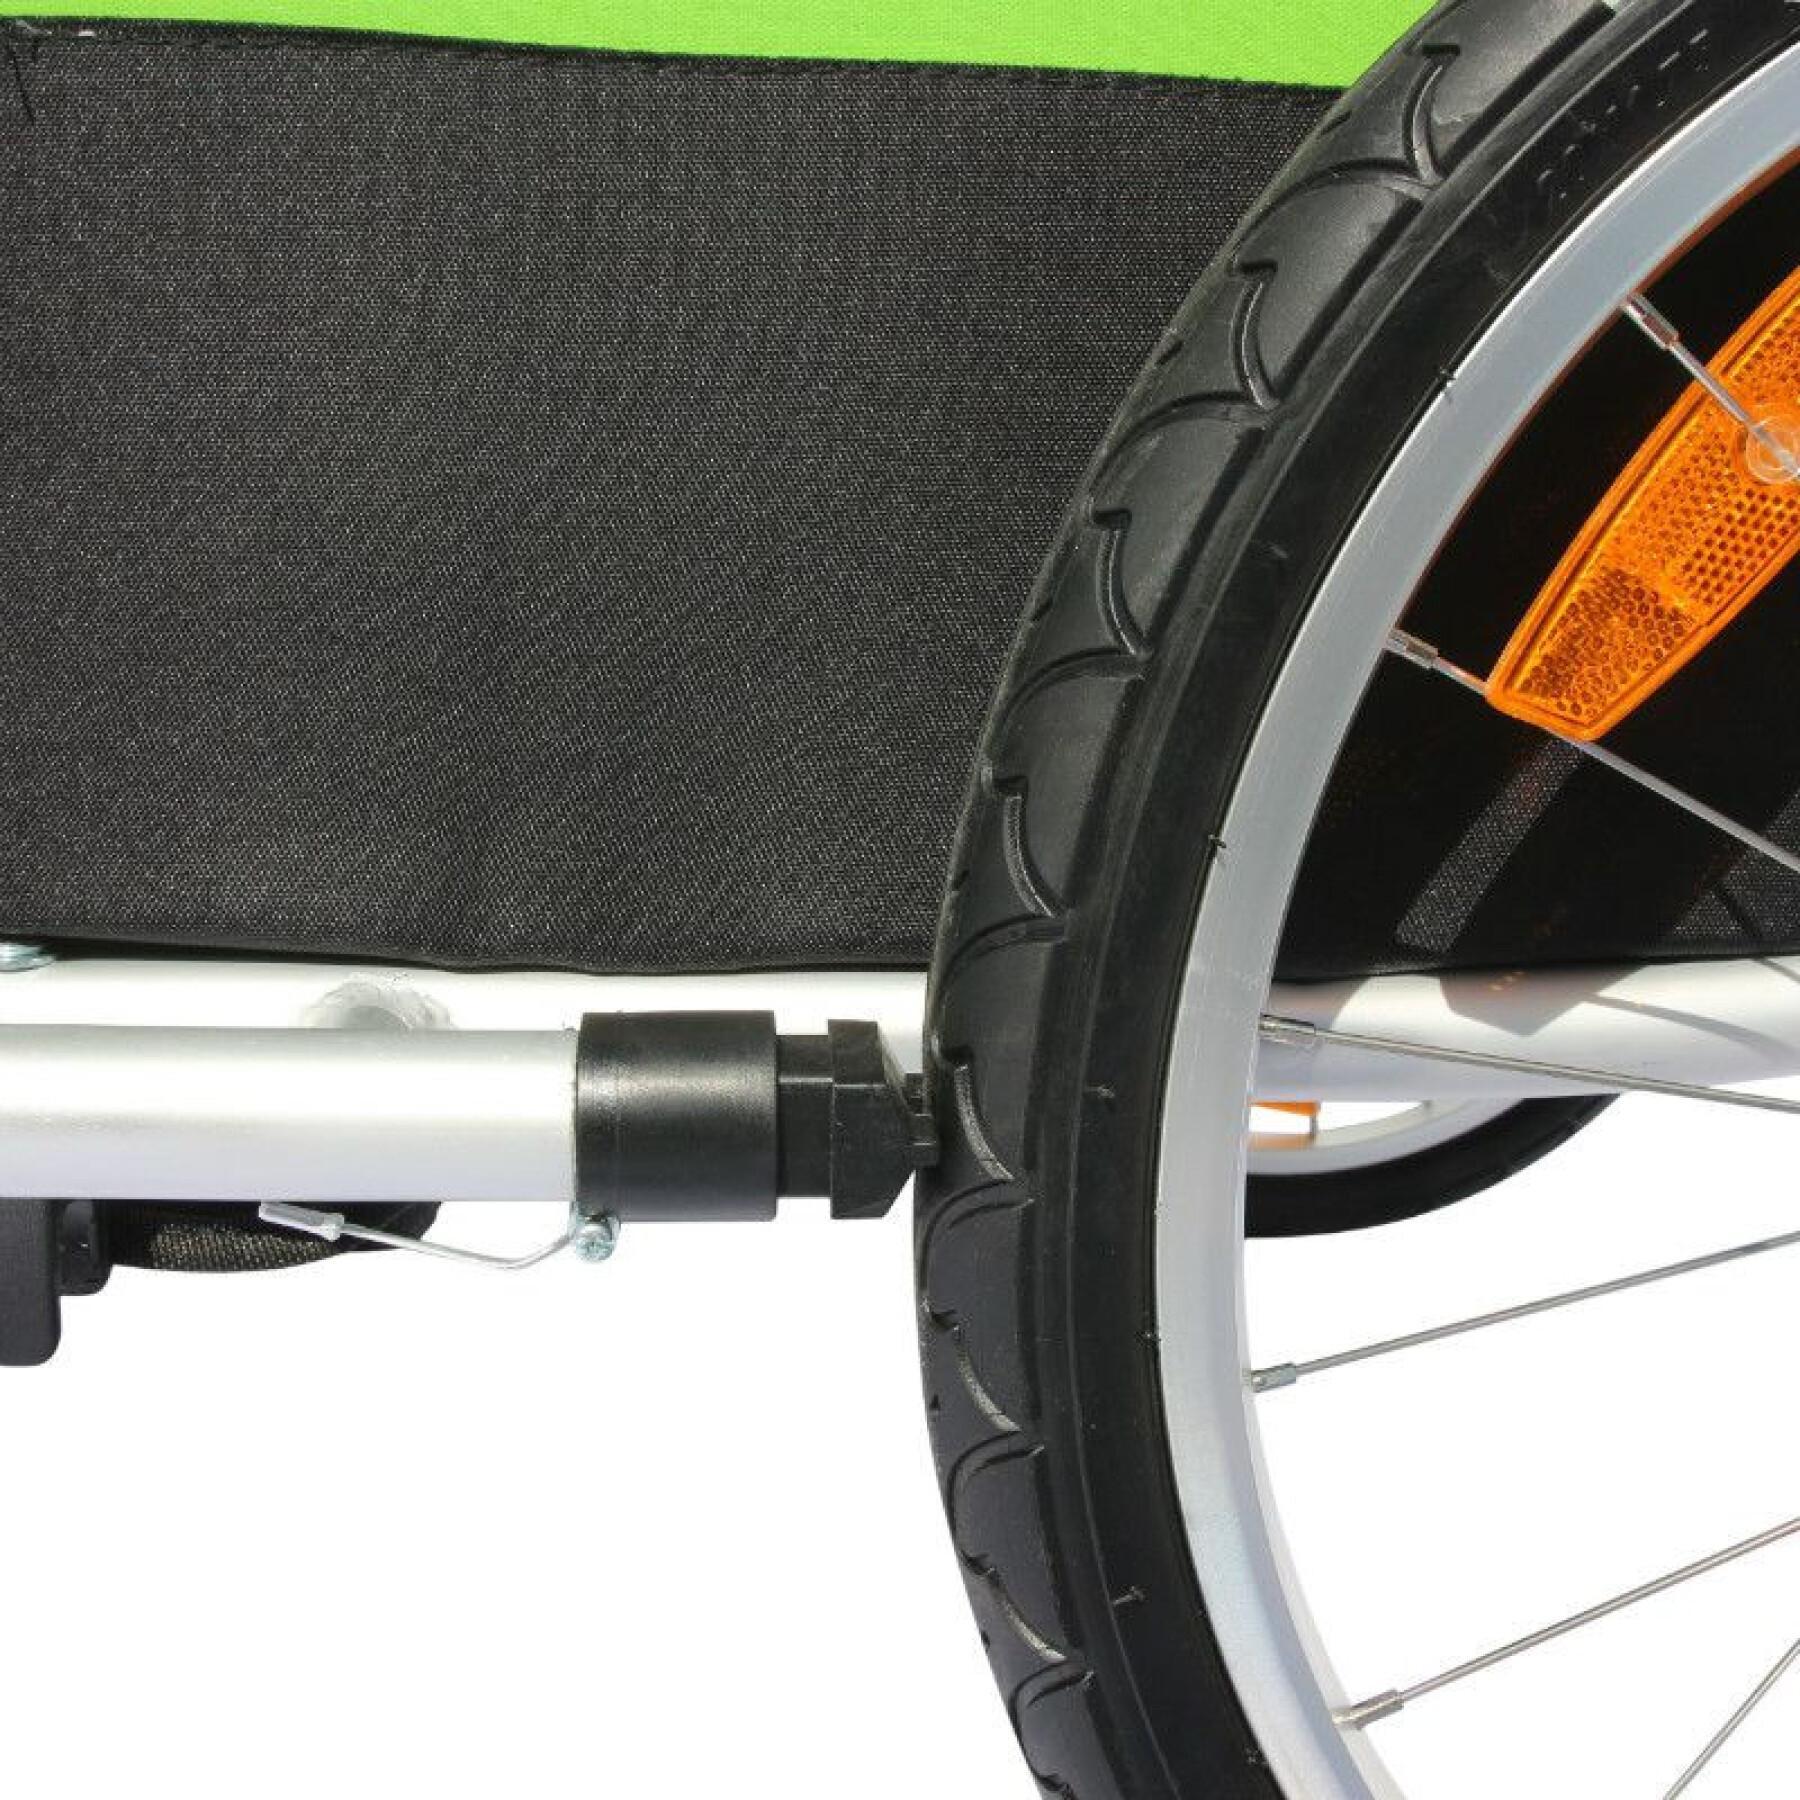 Overdekte 2-zits aluminium maxi kinderwagen fietskar met wielasbevestiging - geleverd met voorwiel + remgreep - montage rapide zonder gereedschap P2R 36 Kg